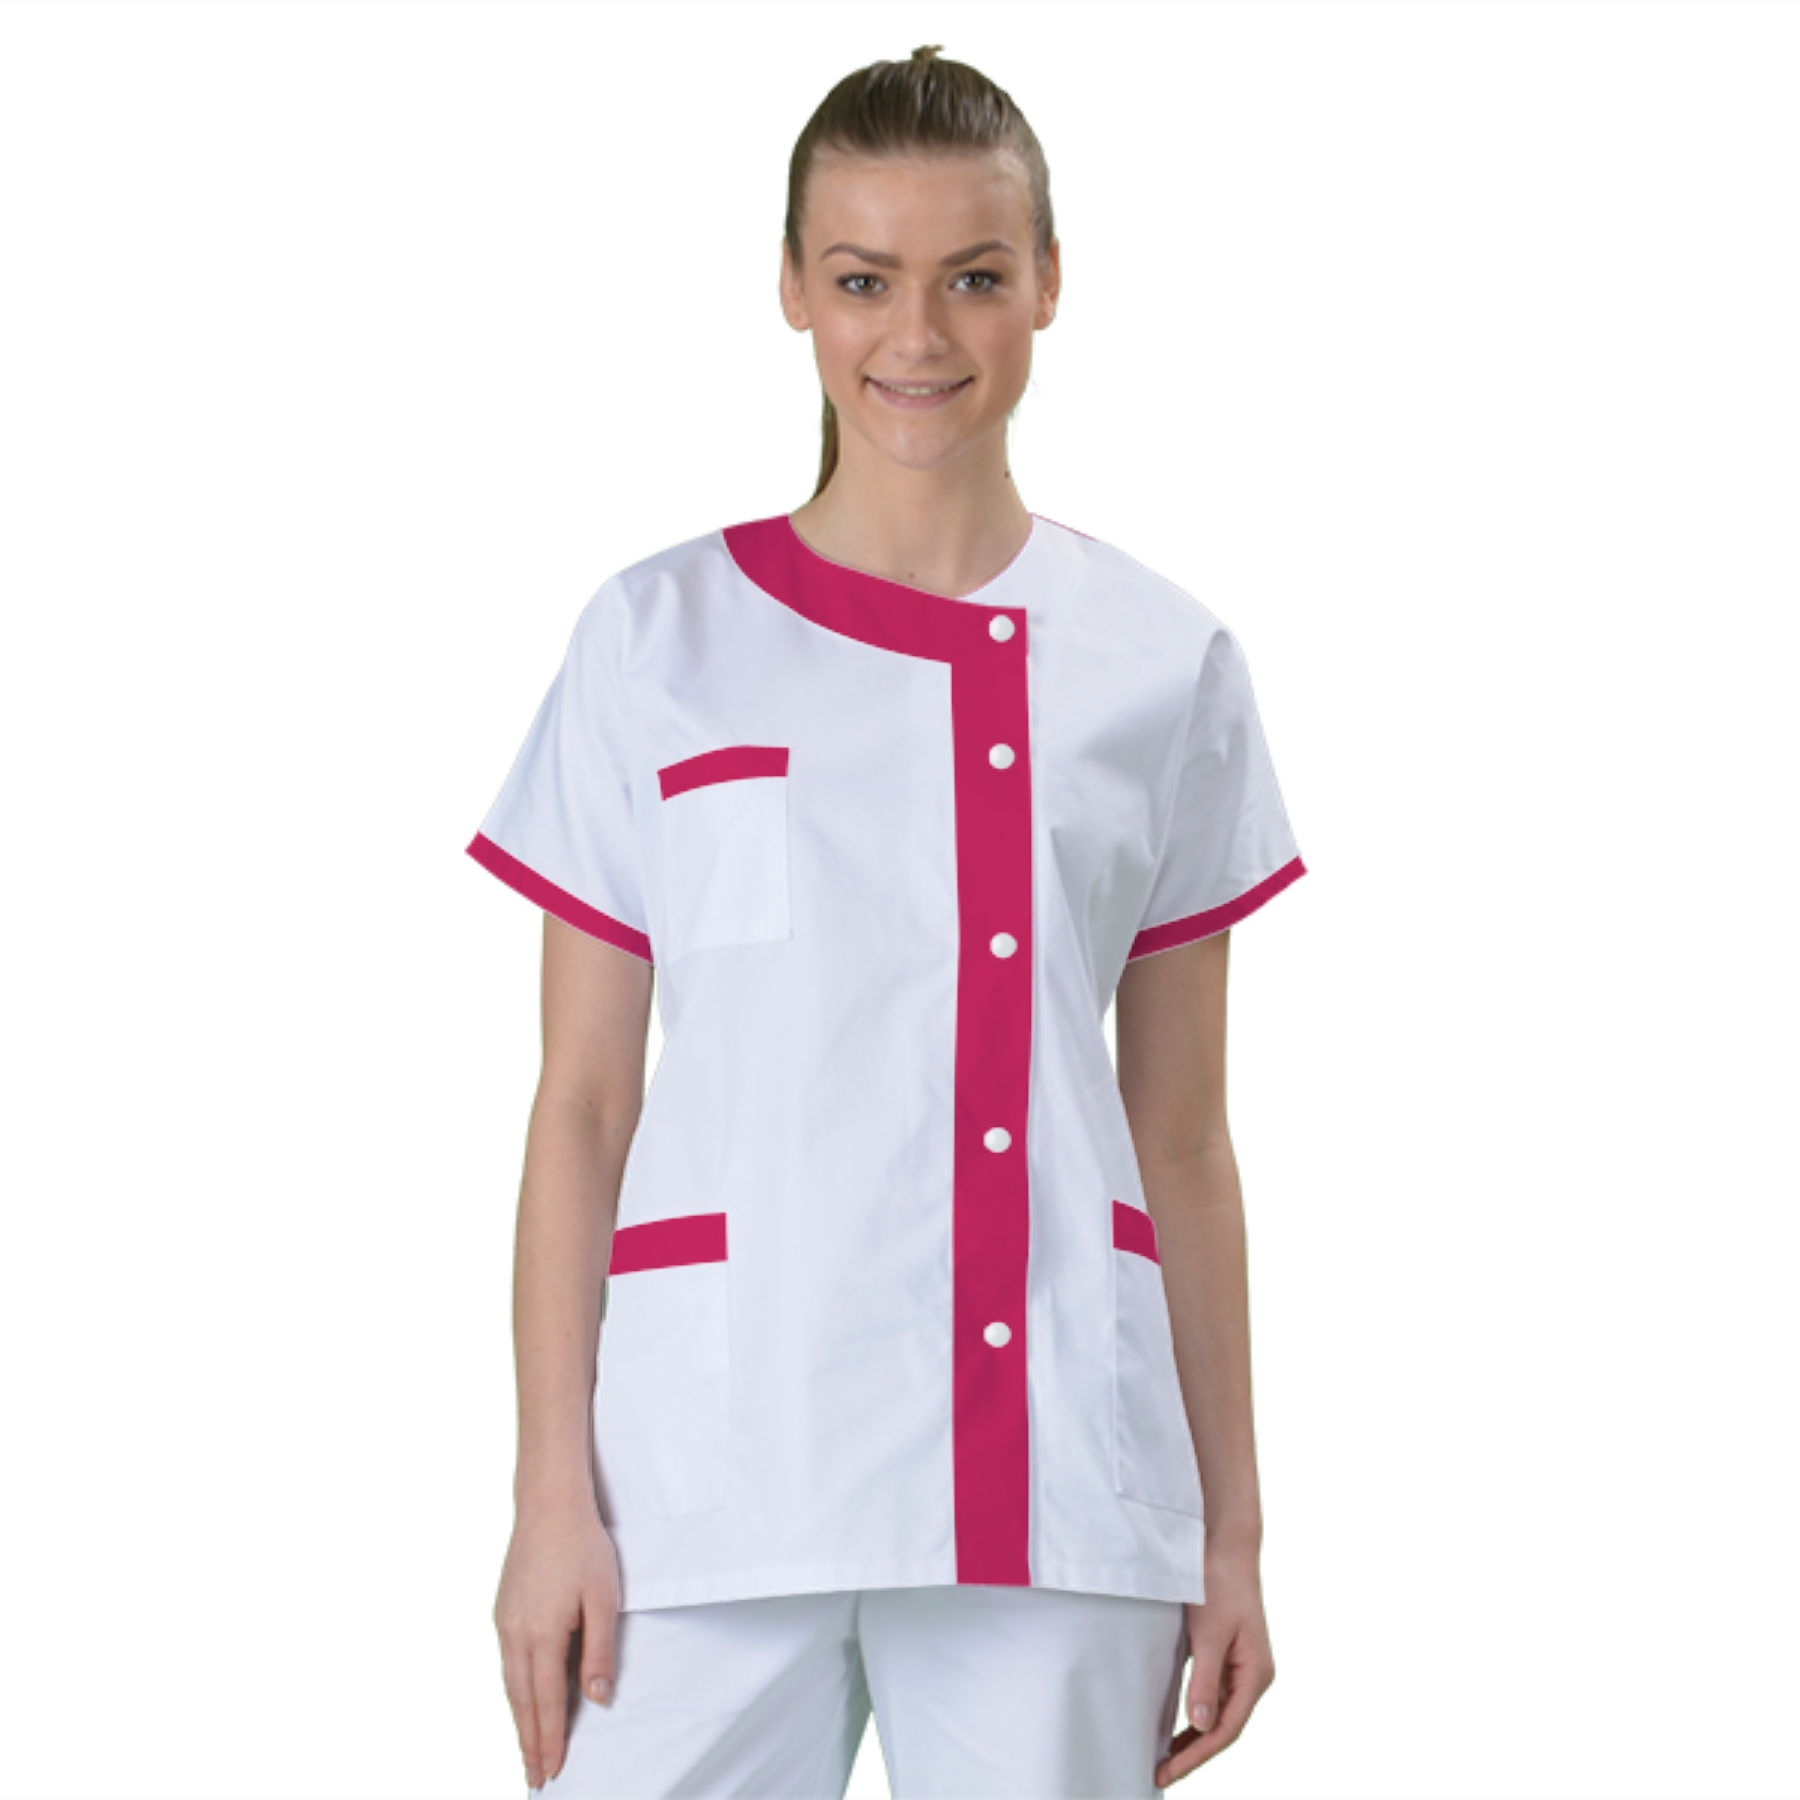 blouse-medicale-col-carre-a-personnaliser acheté - par Laurence  - le 20-01-2022